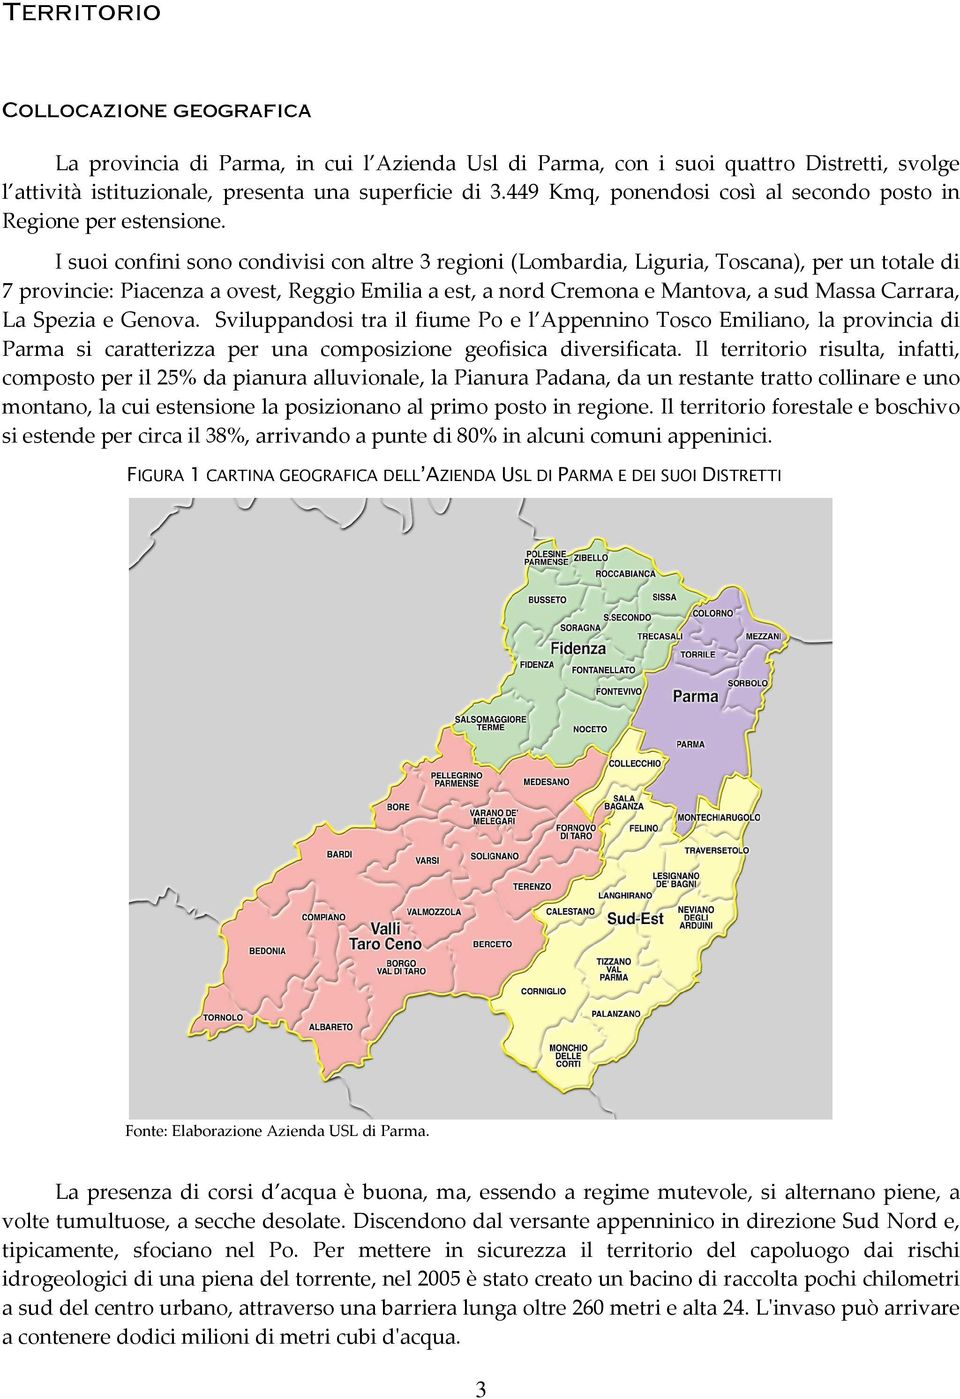 I suoi confini sono condivisi con altre 3 regioni (Lombardia, Liguria, Toscana), per un totale di 7 provincie: Piacenza a ovest, Reggio Emilia a est, a nord Cremona e Mantova, a sud Massa Carrara, La